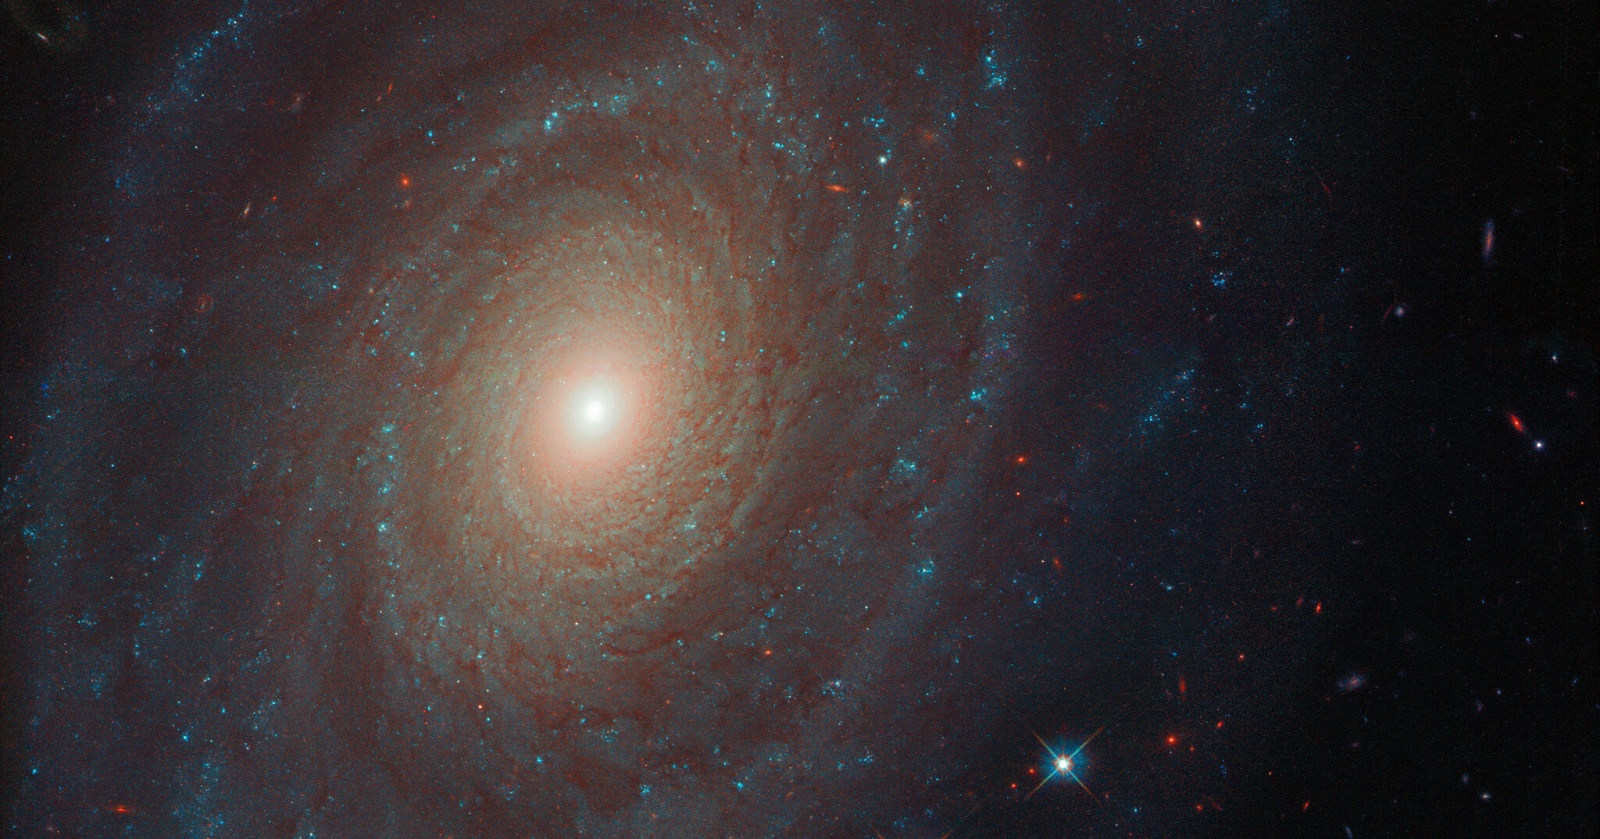 Получено удивительное изображение галактики NGC 691